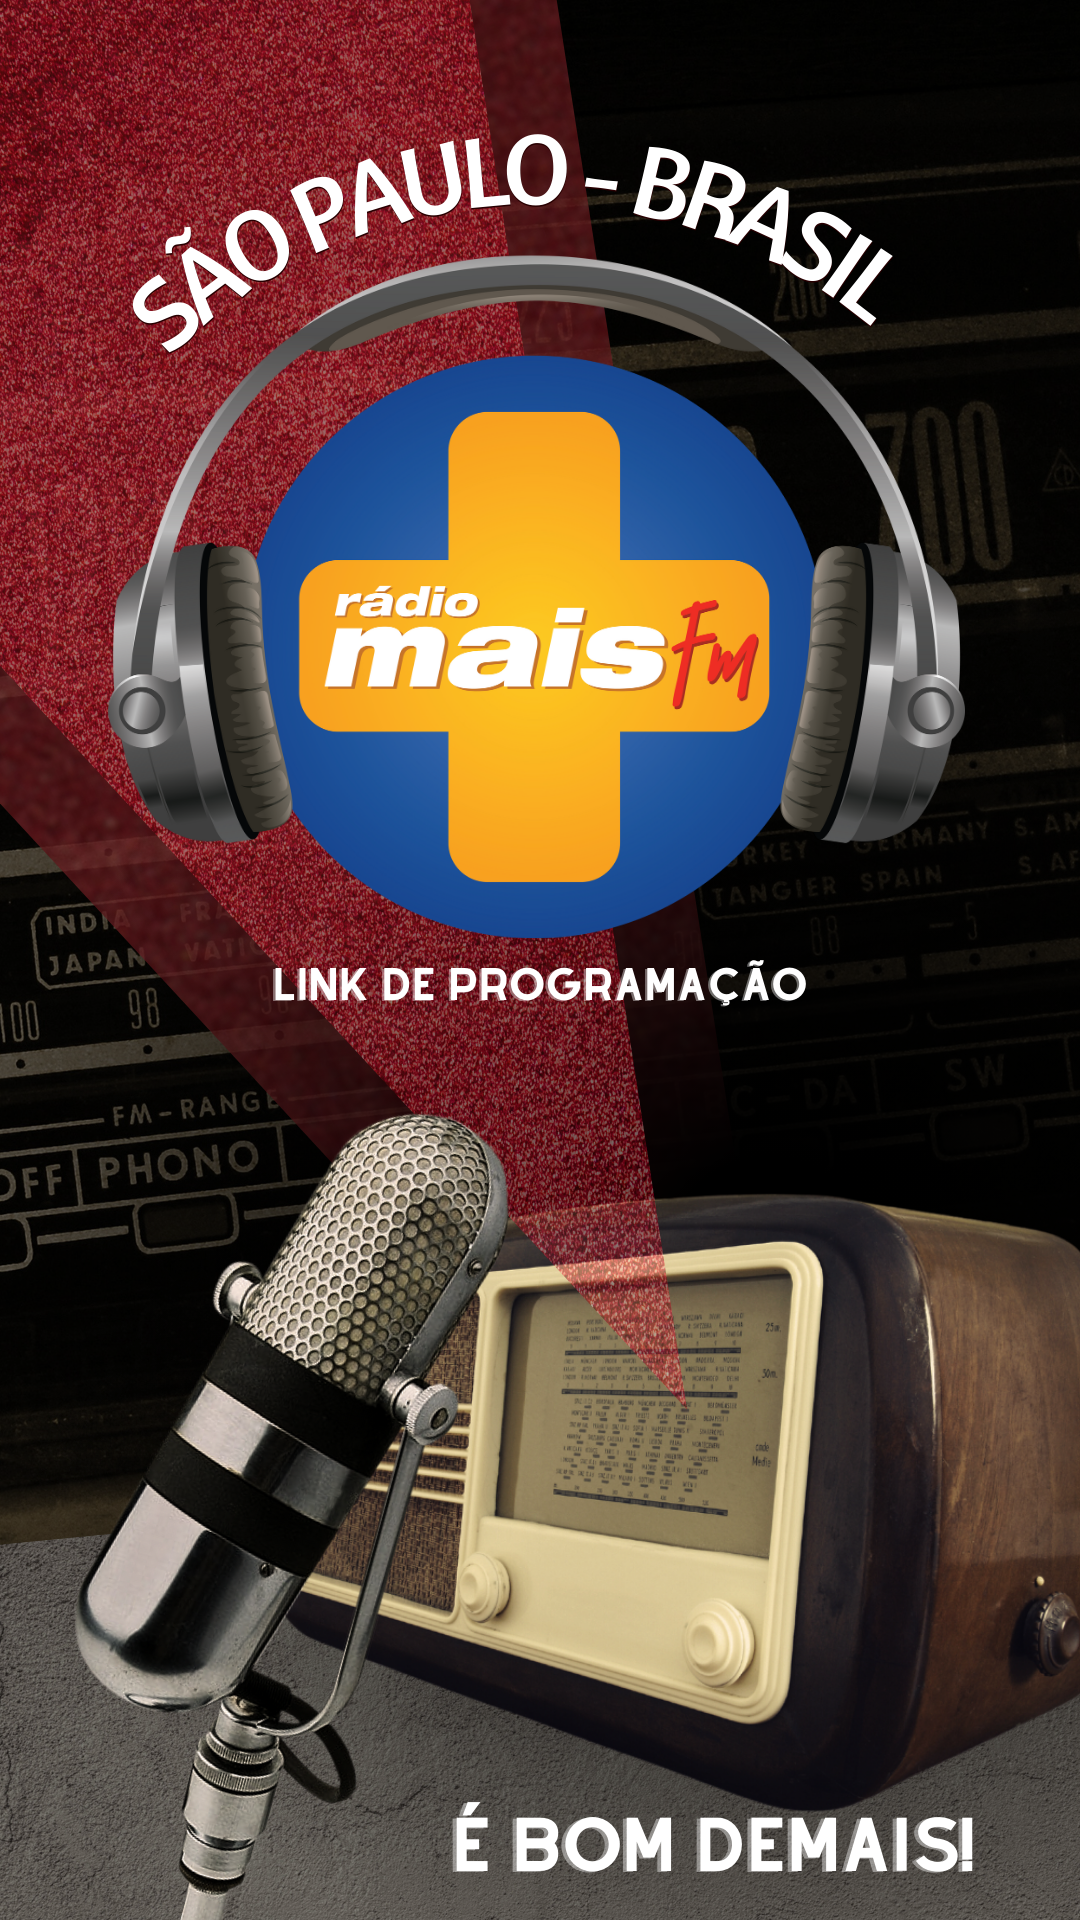 Mais FM Rede - São Paulo